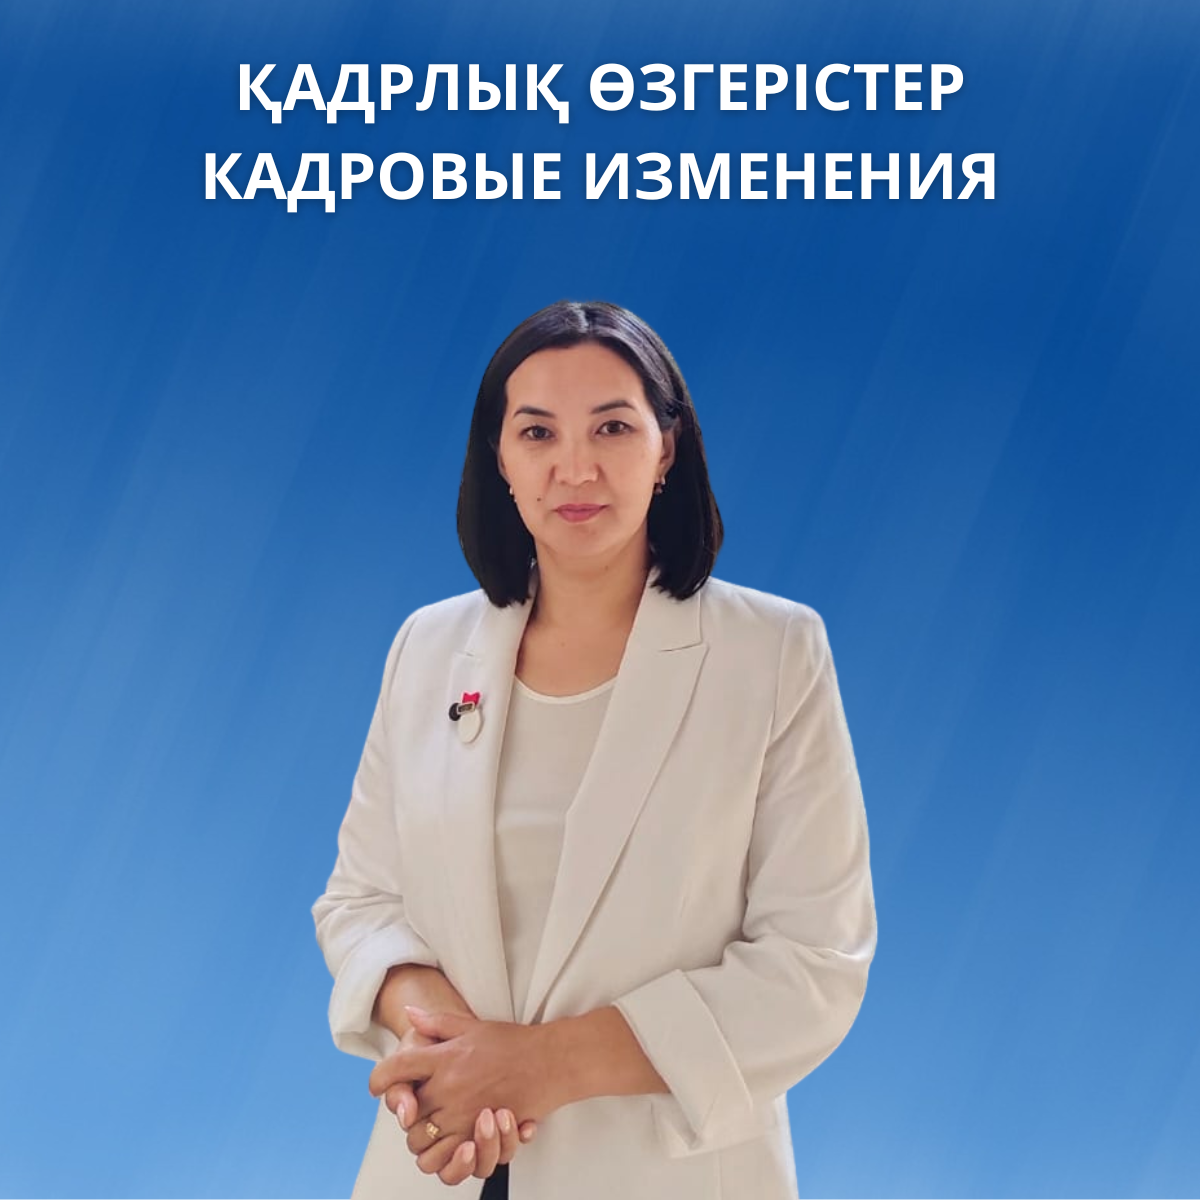 По итогам внутреннего конкурса среди государственных служащих всех местных исполнительных органов Карагандинской области, на должность руководителя отдела Внутренней политики назначена Олжабаева Гульмира Сериковна.